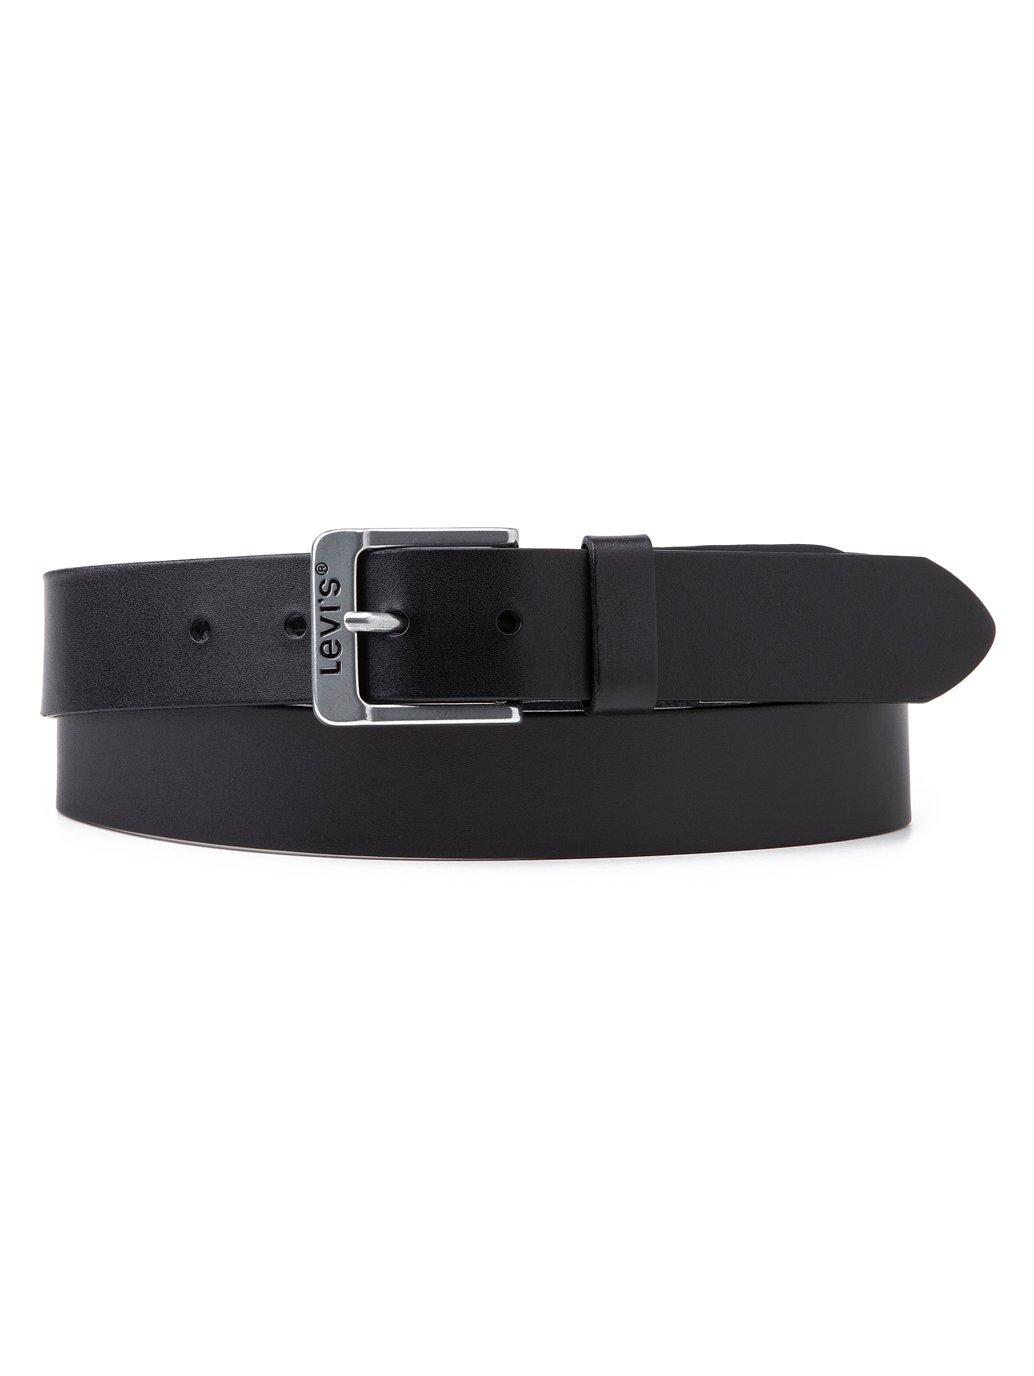 Levi's® Men's Premium Leather Belt | Levi's® Official Online Store SG